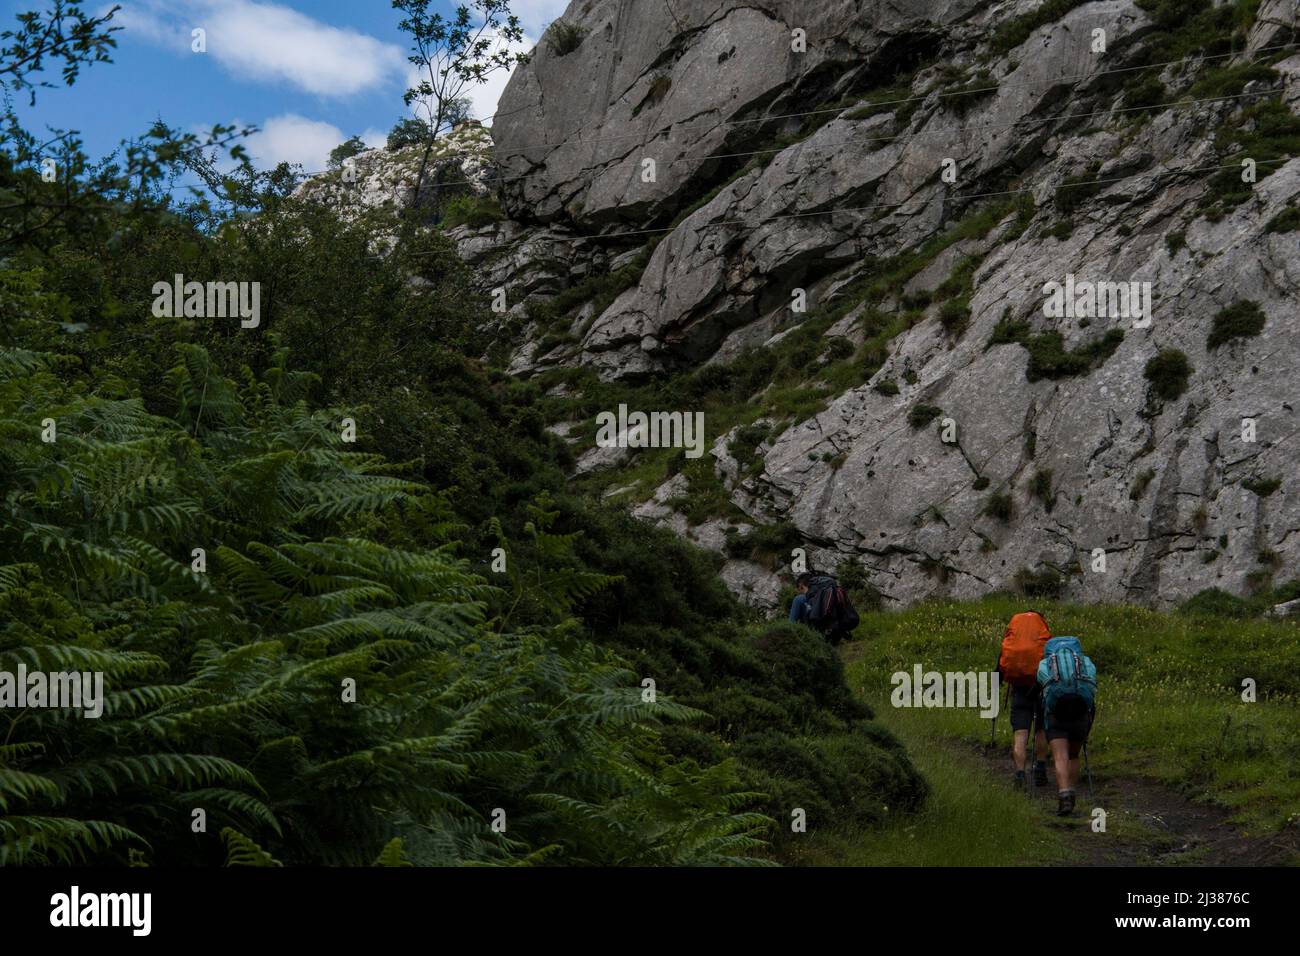 Gli escursionisti vanno in salita con zaini in una verde vegetazione lussureggiante e un ambiente roccioso Foto Stock